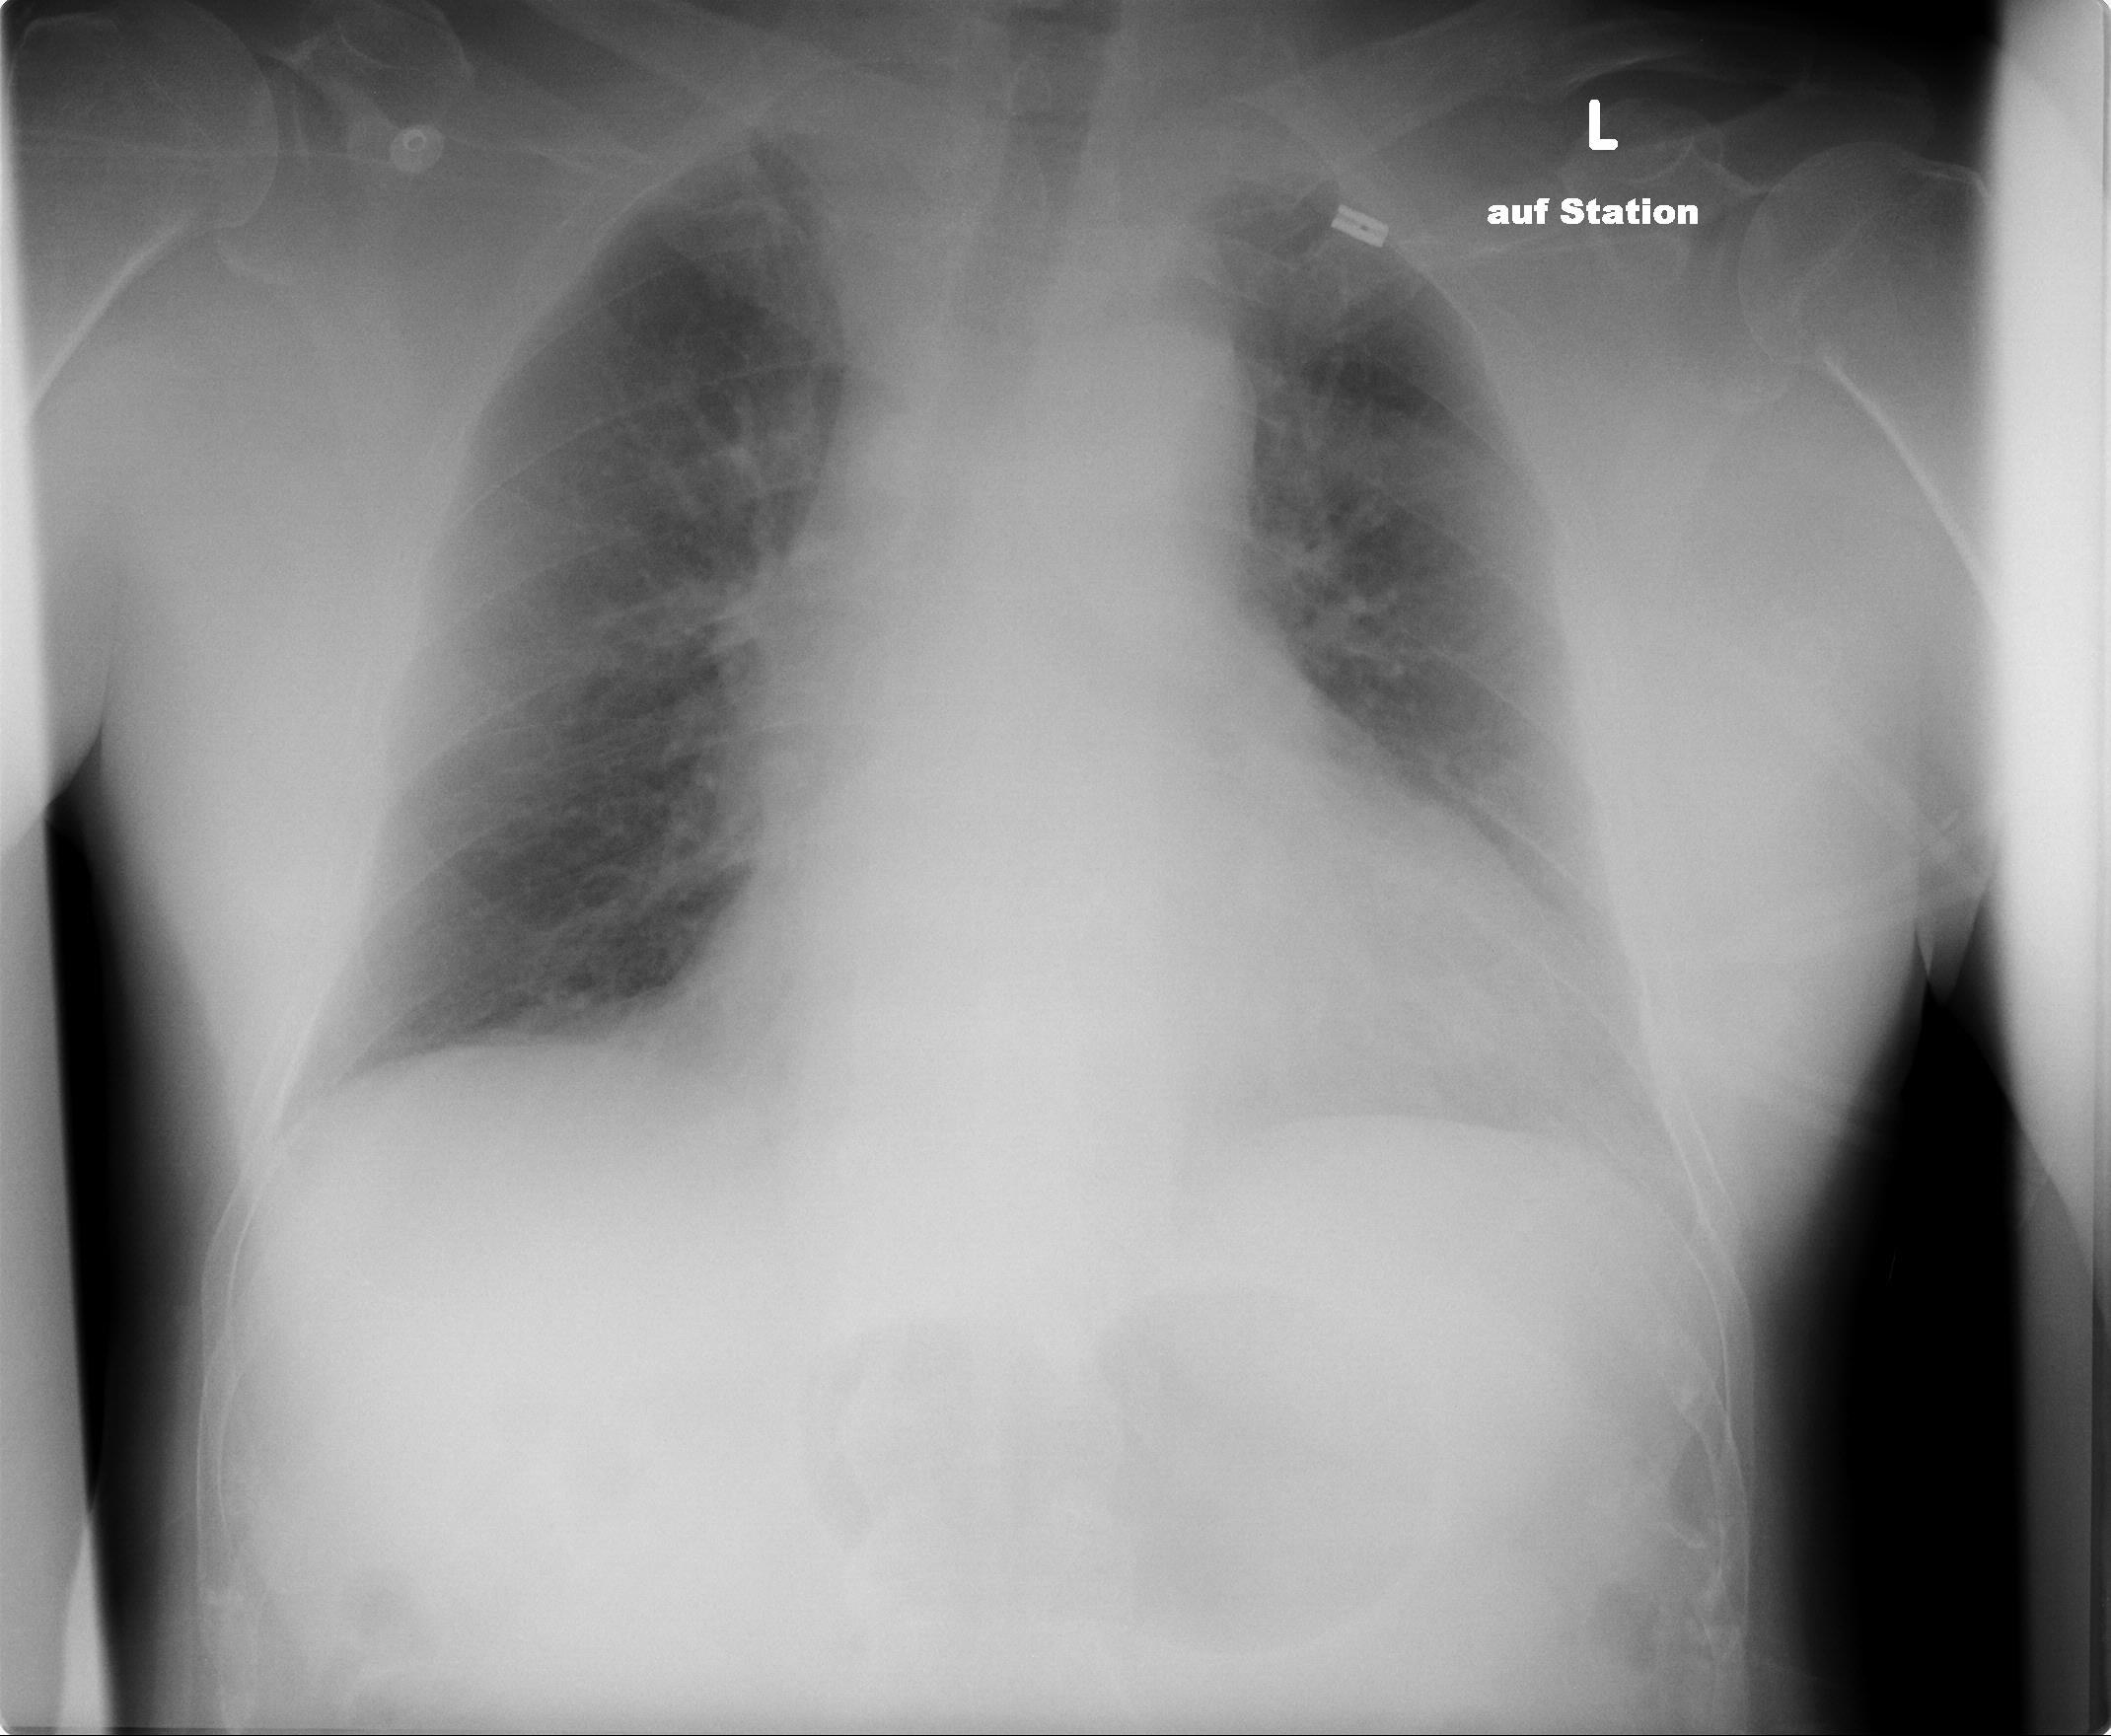 Röntgenbild einer Thorax-PA